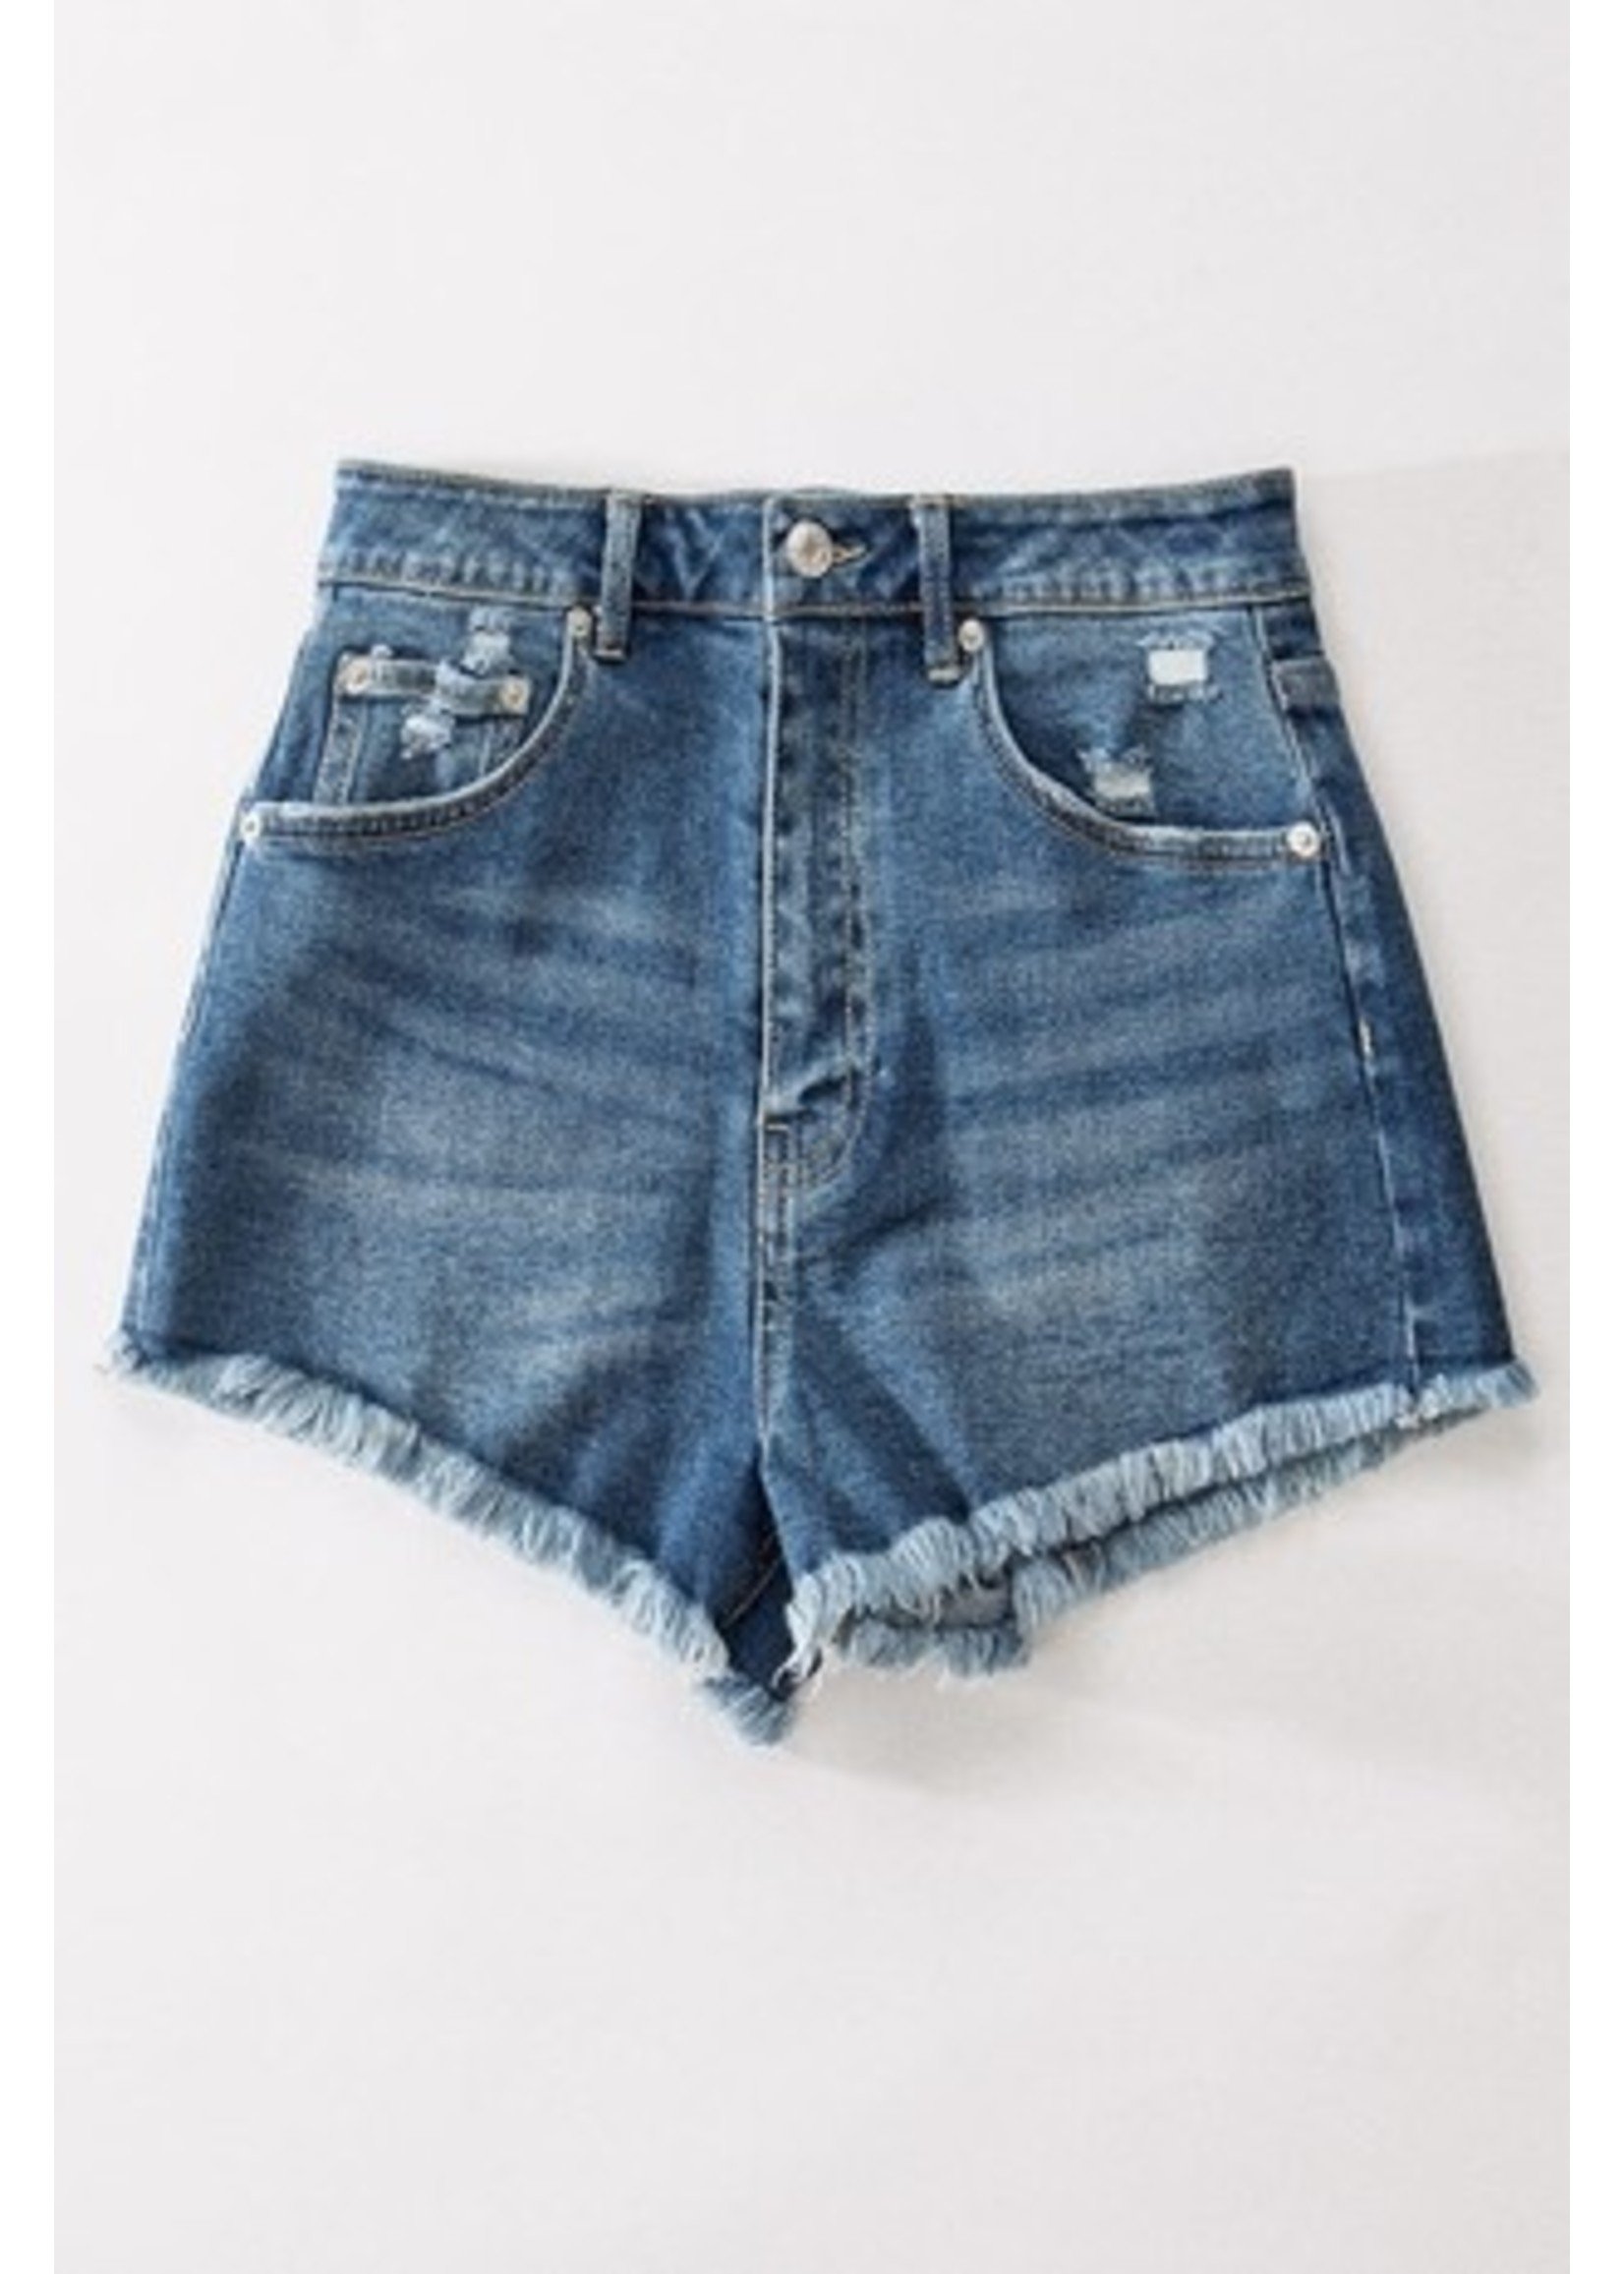 trend : notes Daisy Dukes 2.0 Shorts Blue